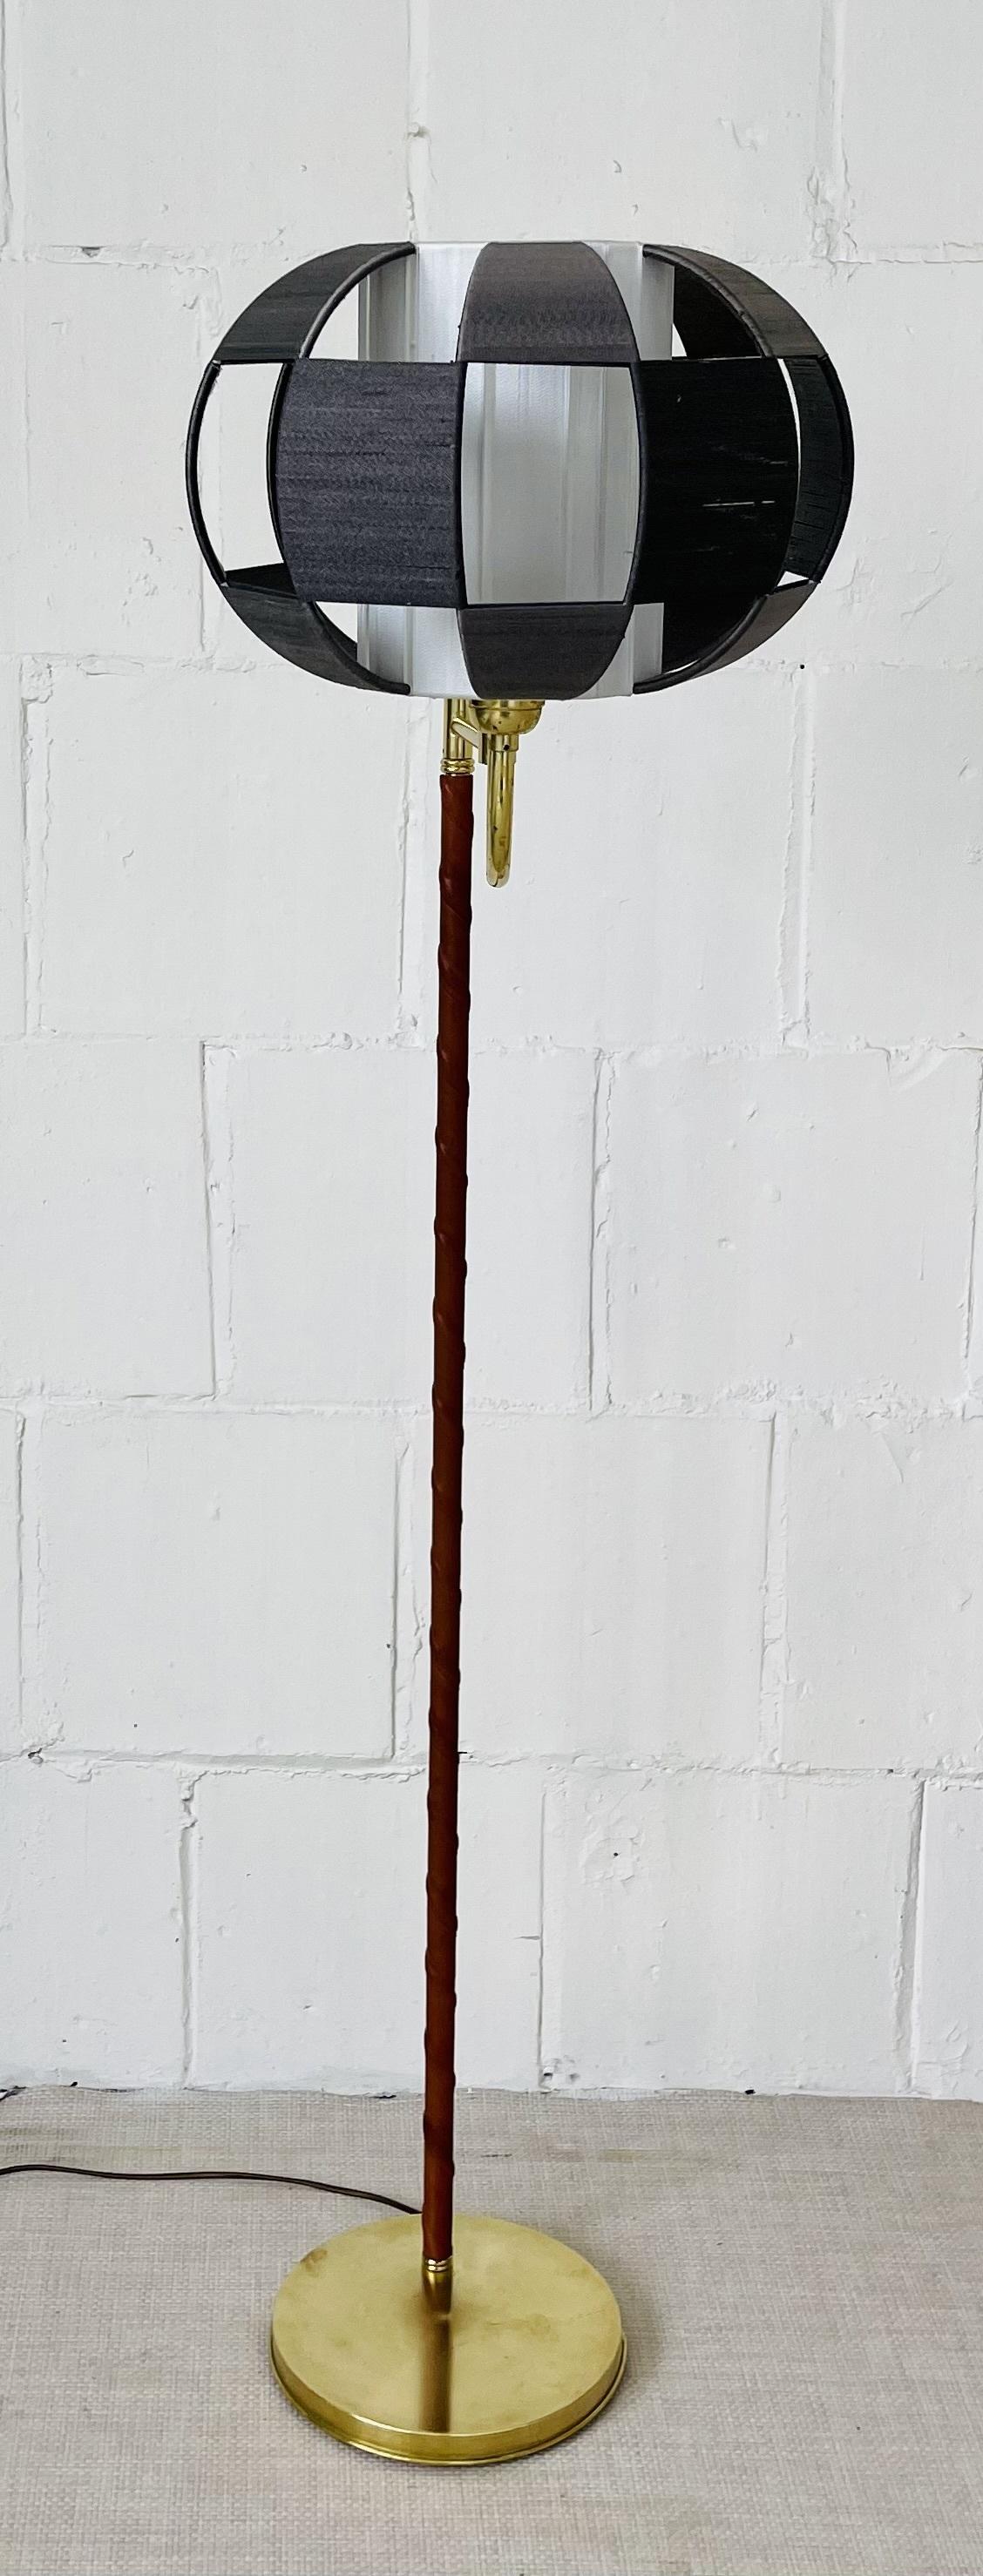 The Modern Scandinavian, Stehlampe mit Leder umwickelt, Mitte des Jahrhunderts
 
Entworfen Moderne Stehleuchte in organischer Form, hergestellt von EWA in Schweden. Die modernistische Stehleuchte hat eine Kugel, die sich auf einem c-förmigen Hals